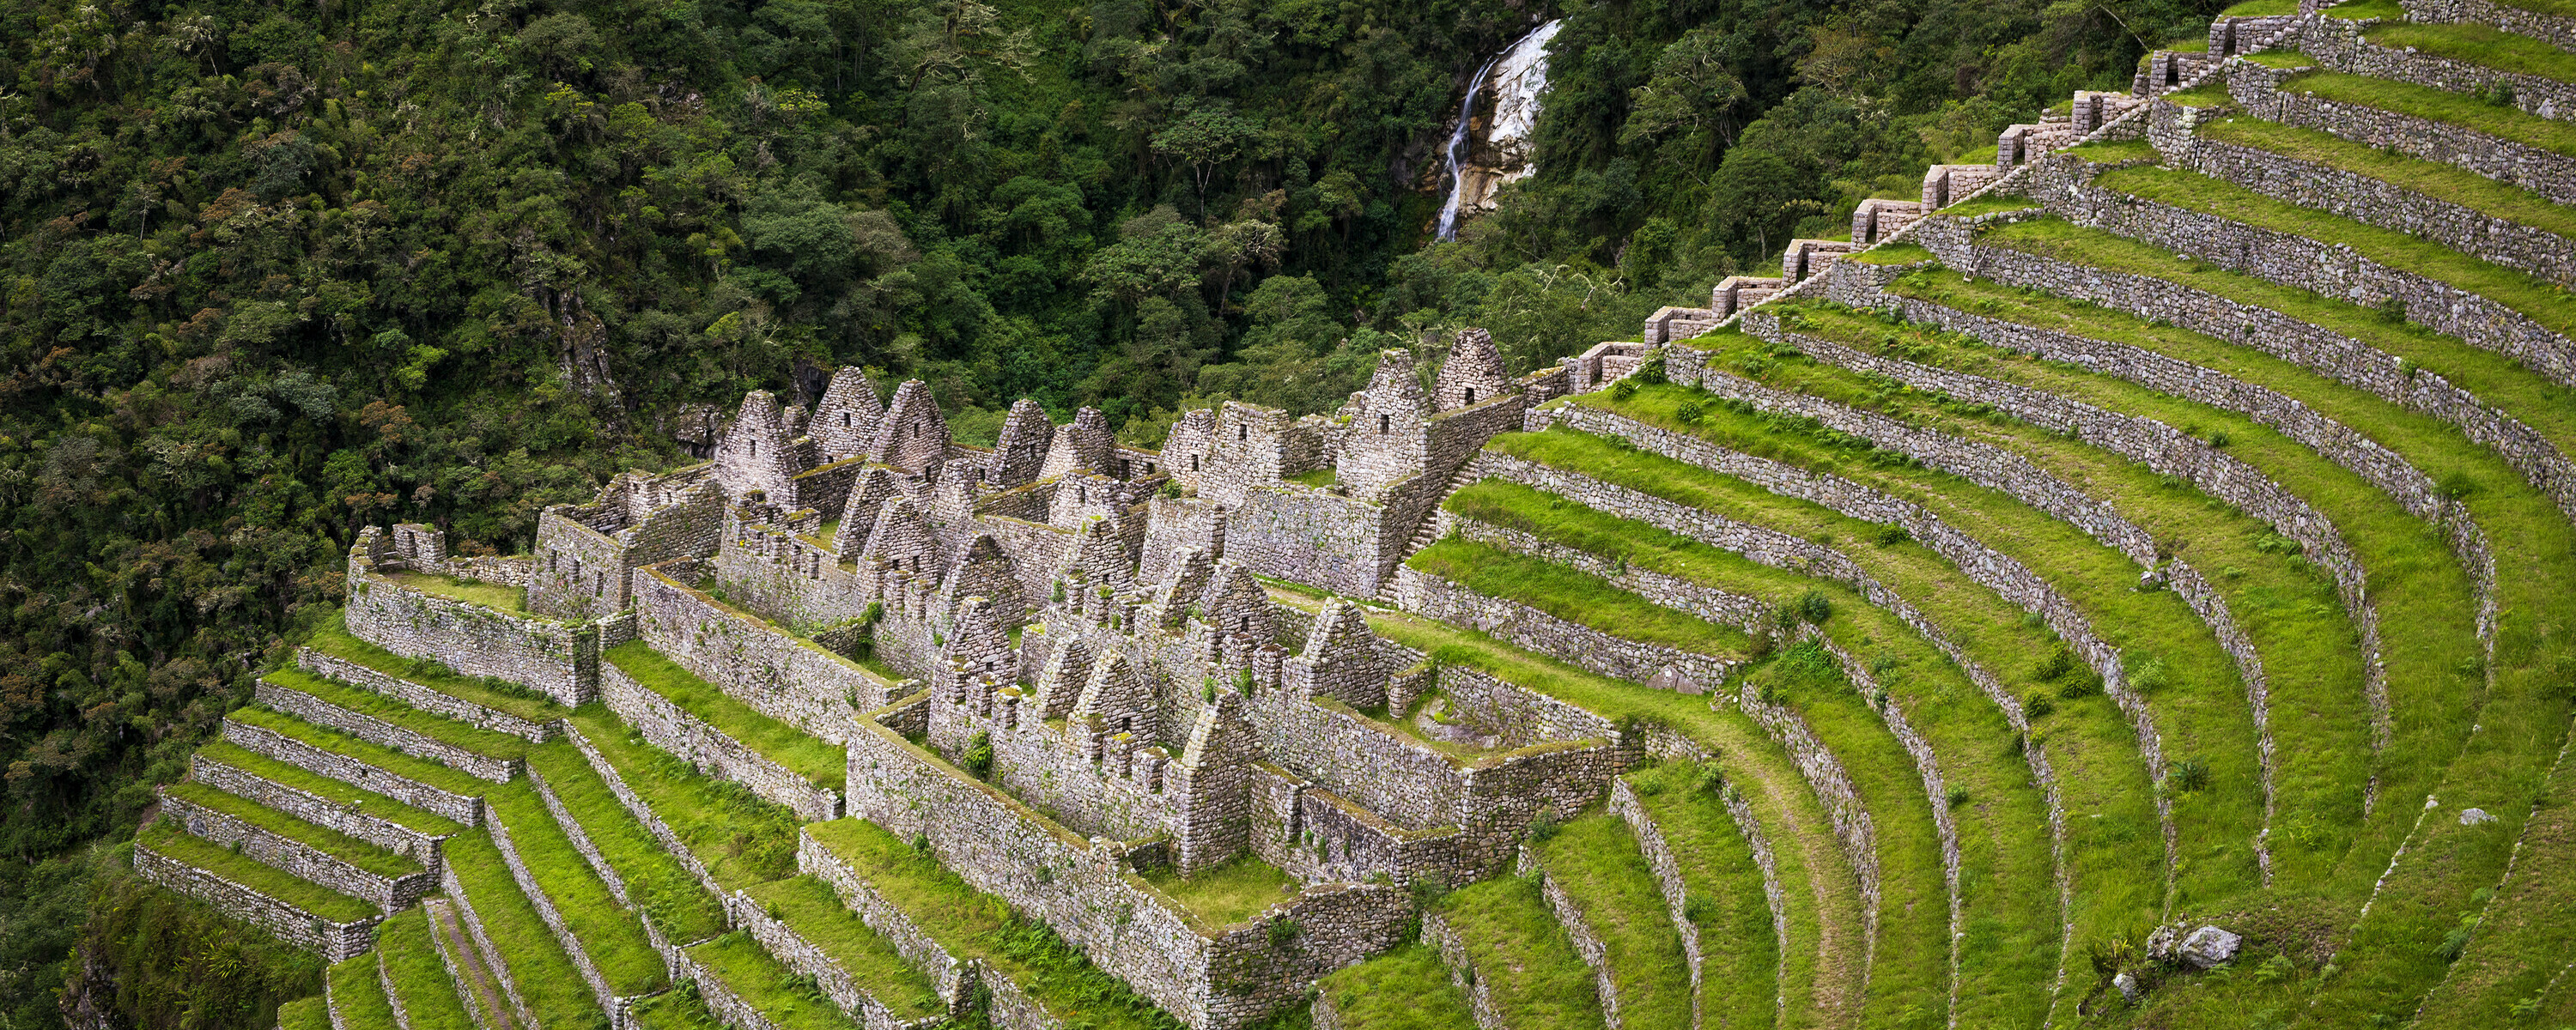 Vi passerer mange inkaruiner på vei til Machu Picchu.